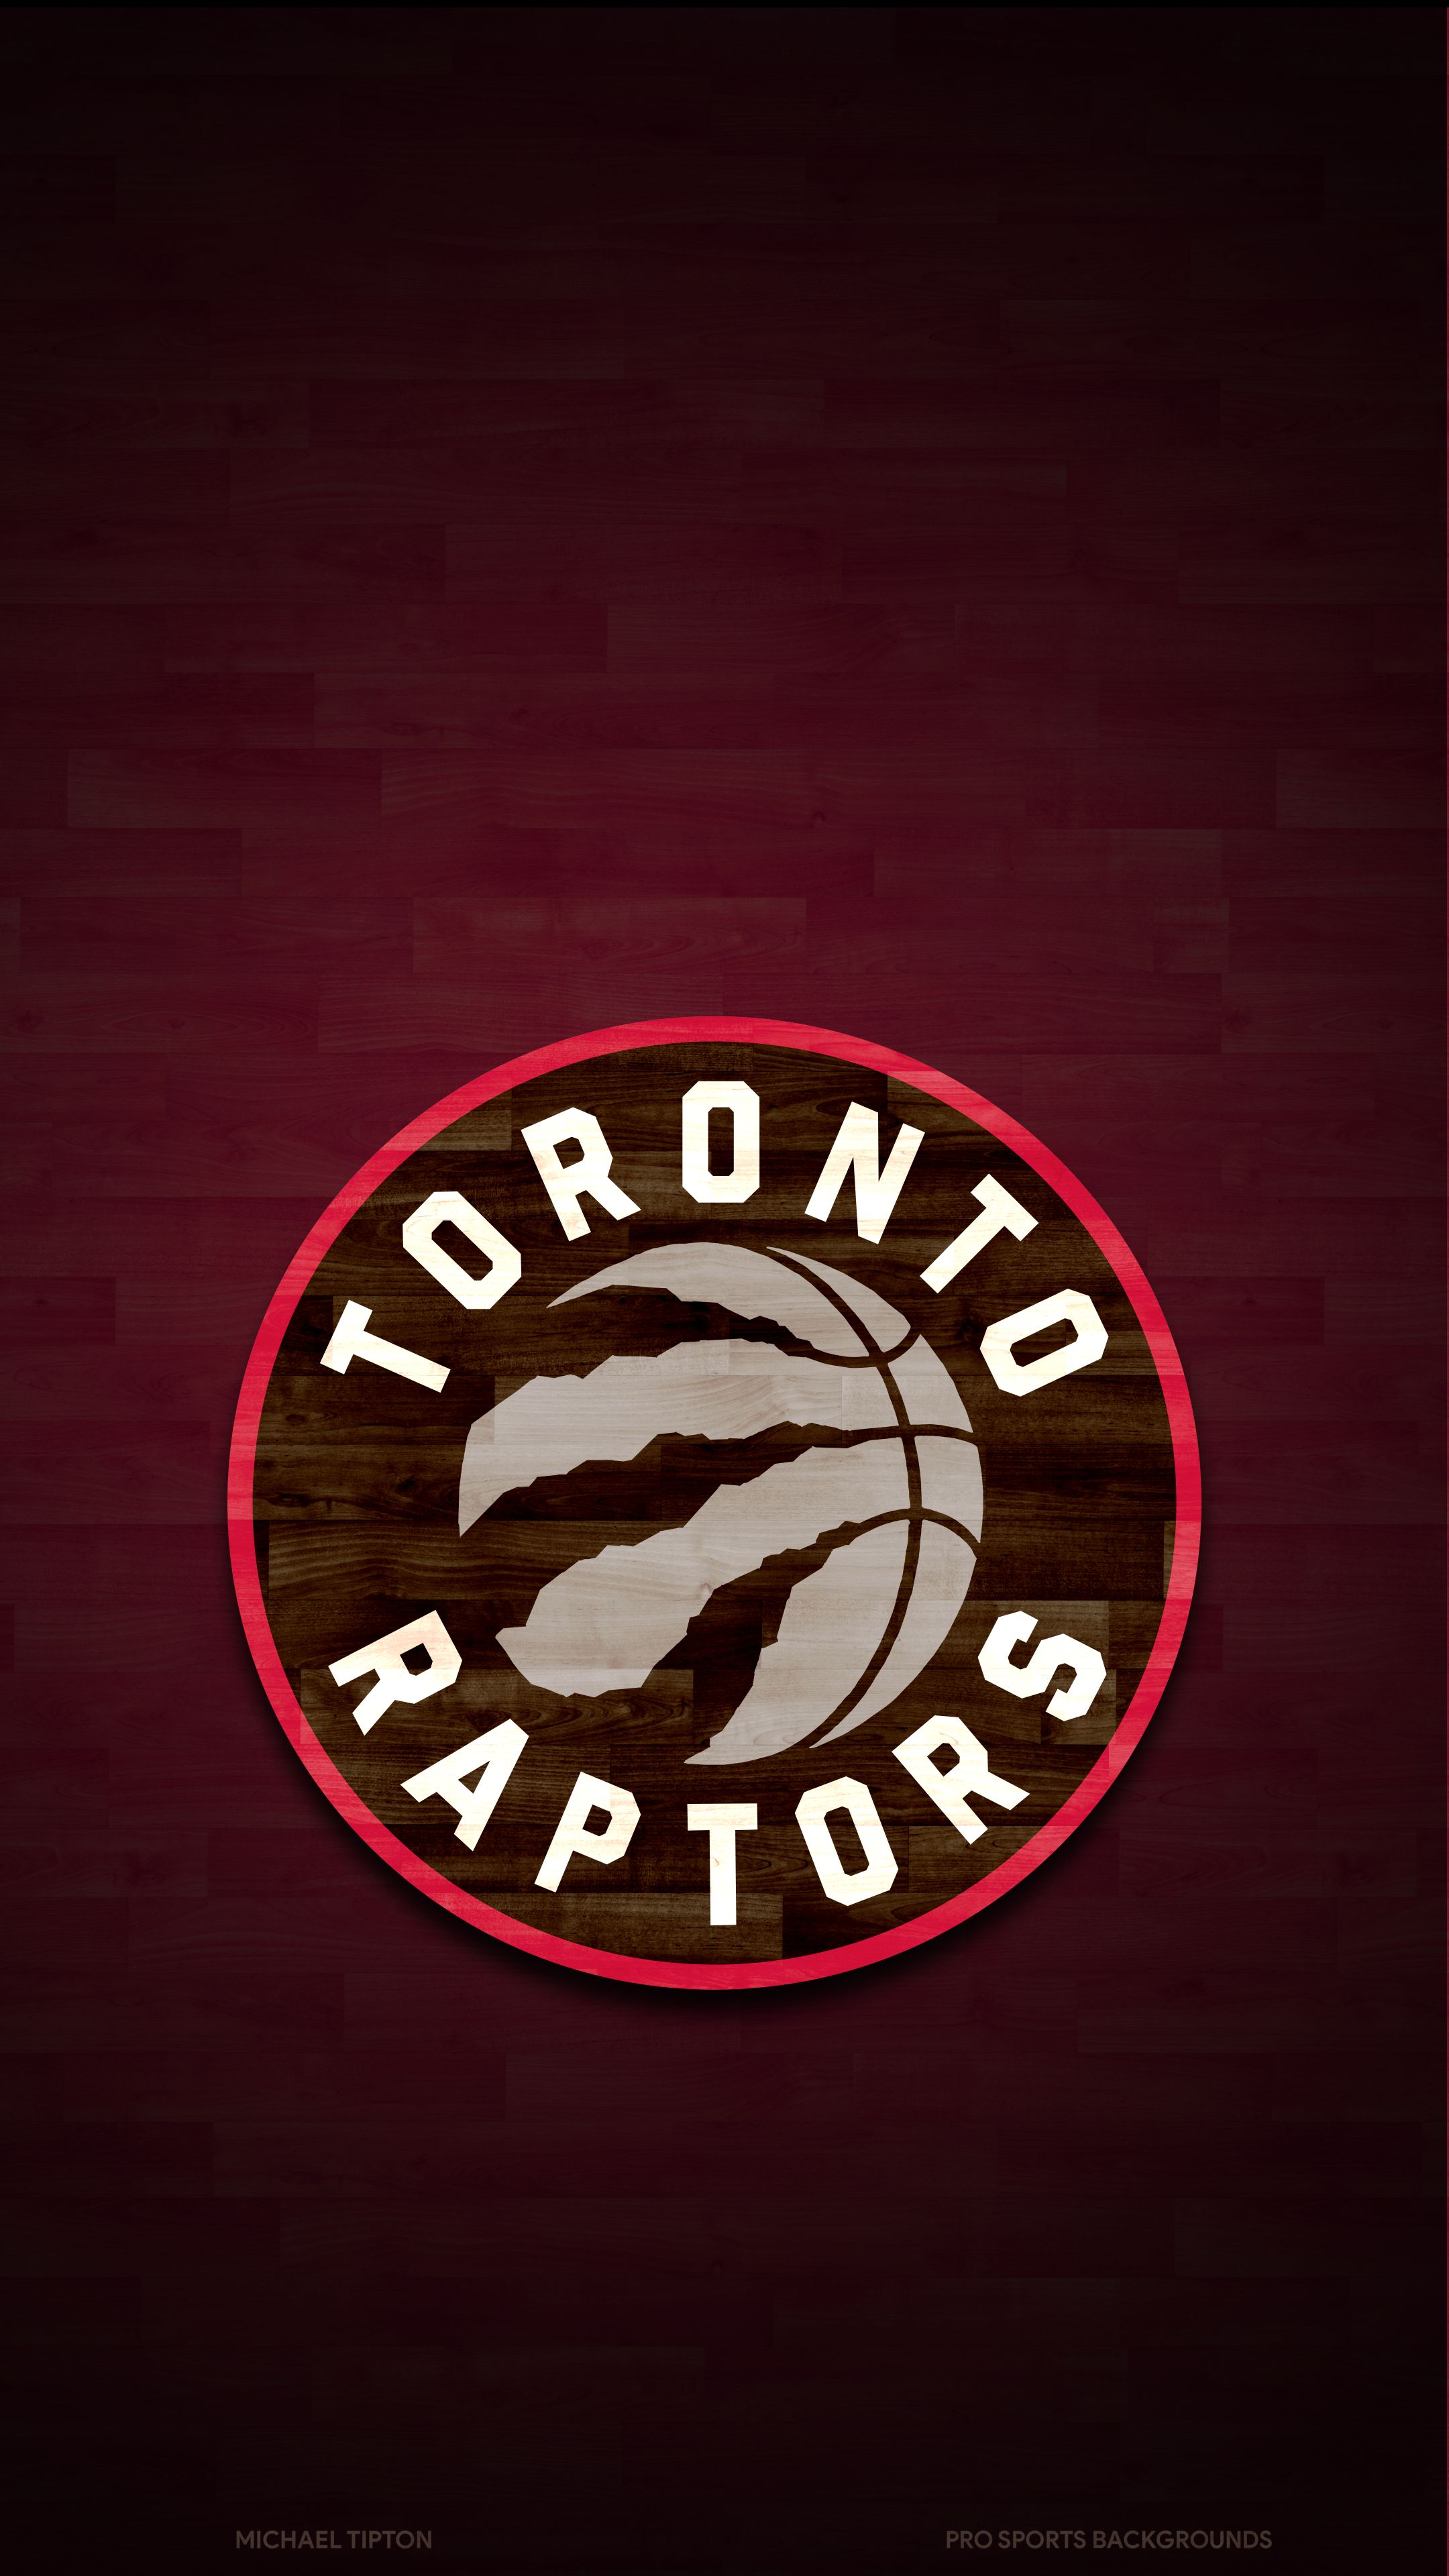 Скачать обои бесплатно Баскетбол, Нба, Виды Спорта, Торонто Рэпторс картинка на рабочий стол ПК